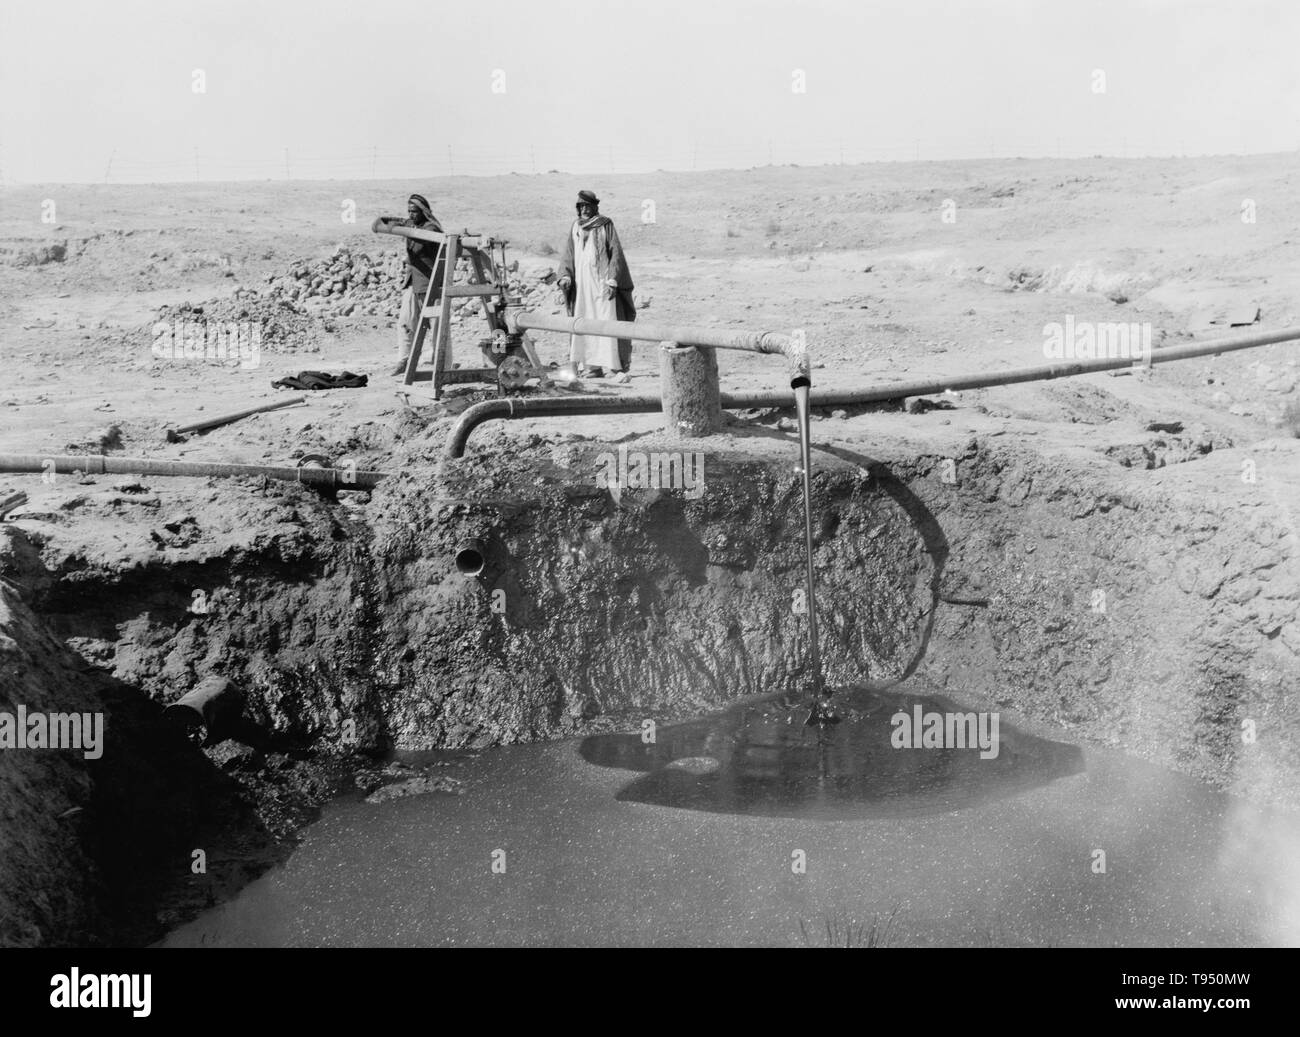 Gli uomini di bitume di pompaggio da un pozzo in 1932, in un'area di pozzetti bituminosa a sud di Mosul, Iraq. Il bitume è un giunto viscoso nero miscela di idrocarburi ottenuta naturalmente o come un residuo della distillazione del petrolio. Esso è utilizzato per il manto stradale e la copertura. Foto Stock